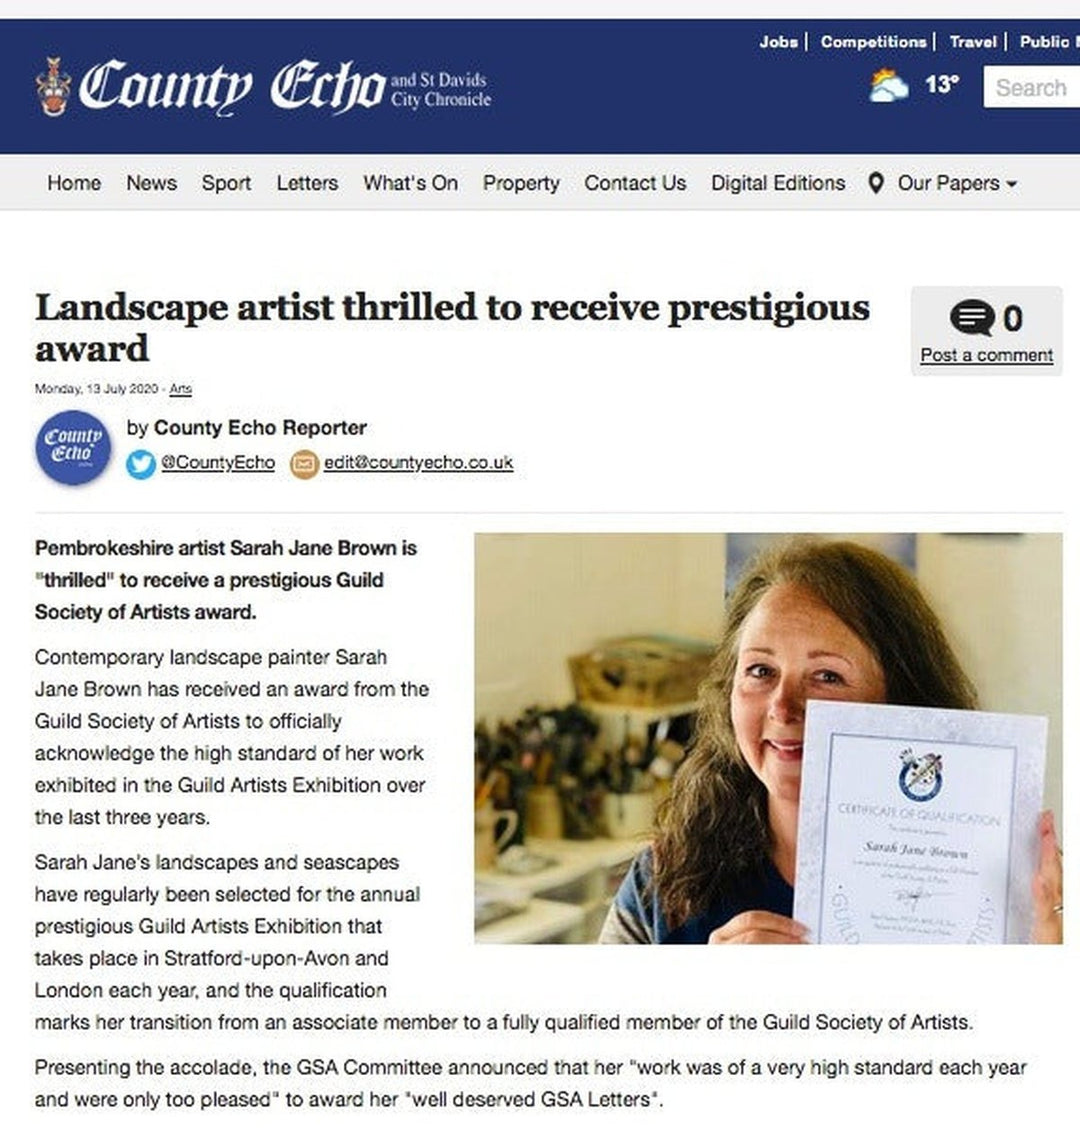 “Landscape artist thrilled to receive prestigious award”